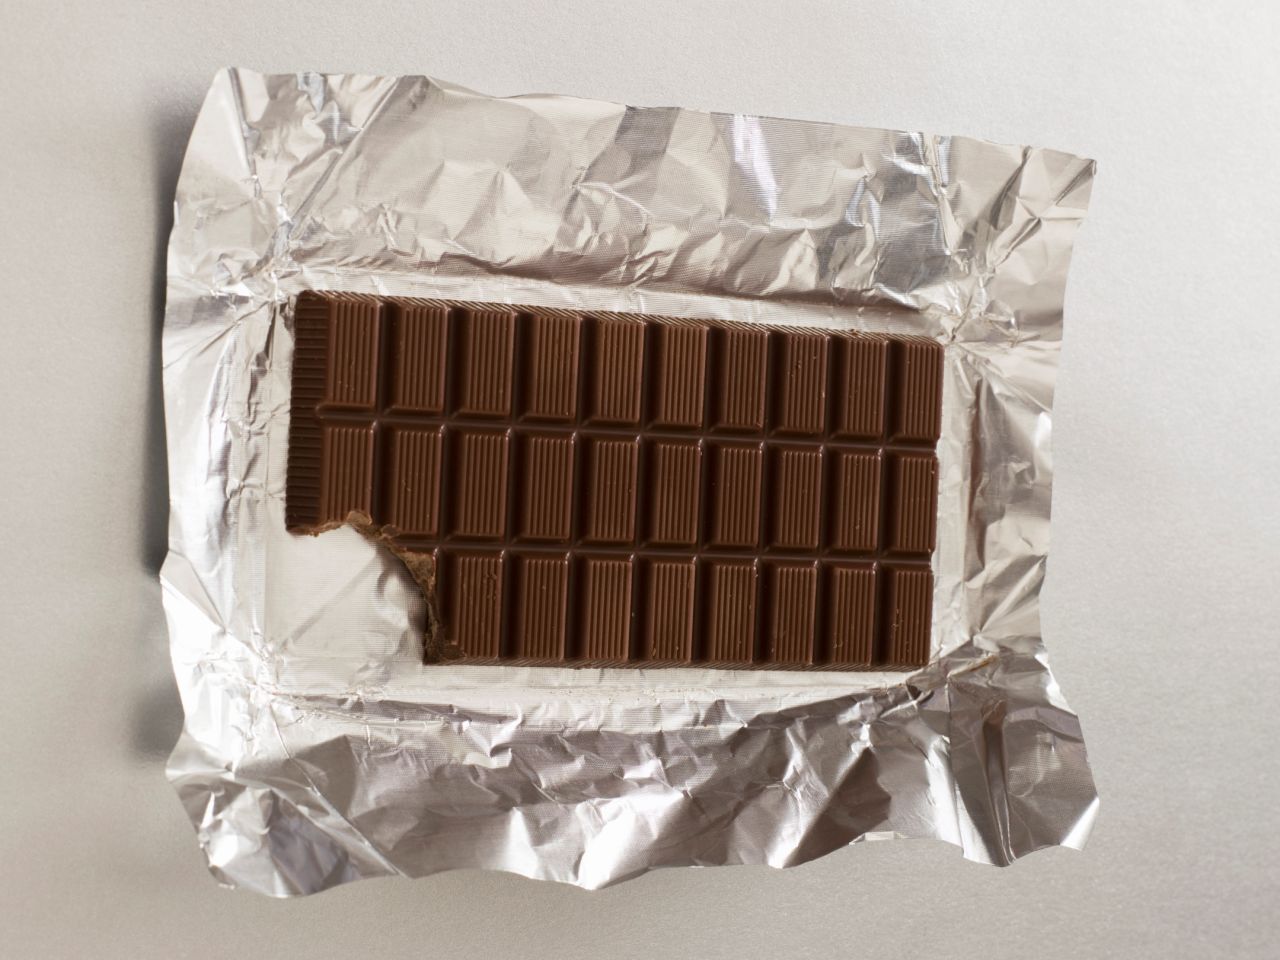 Si piensas regalar chocolates, opta por el oscuro y en lugar de regalar tablillas grandes, obsequia pequeñas muestras.